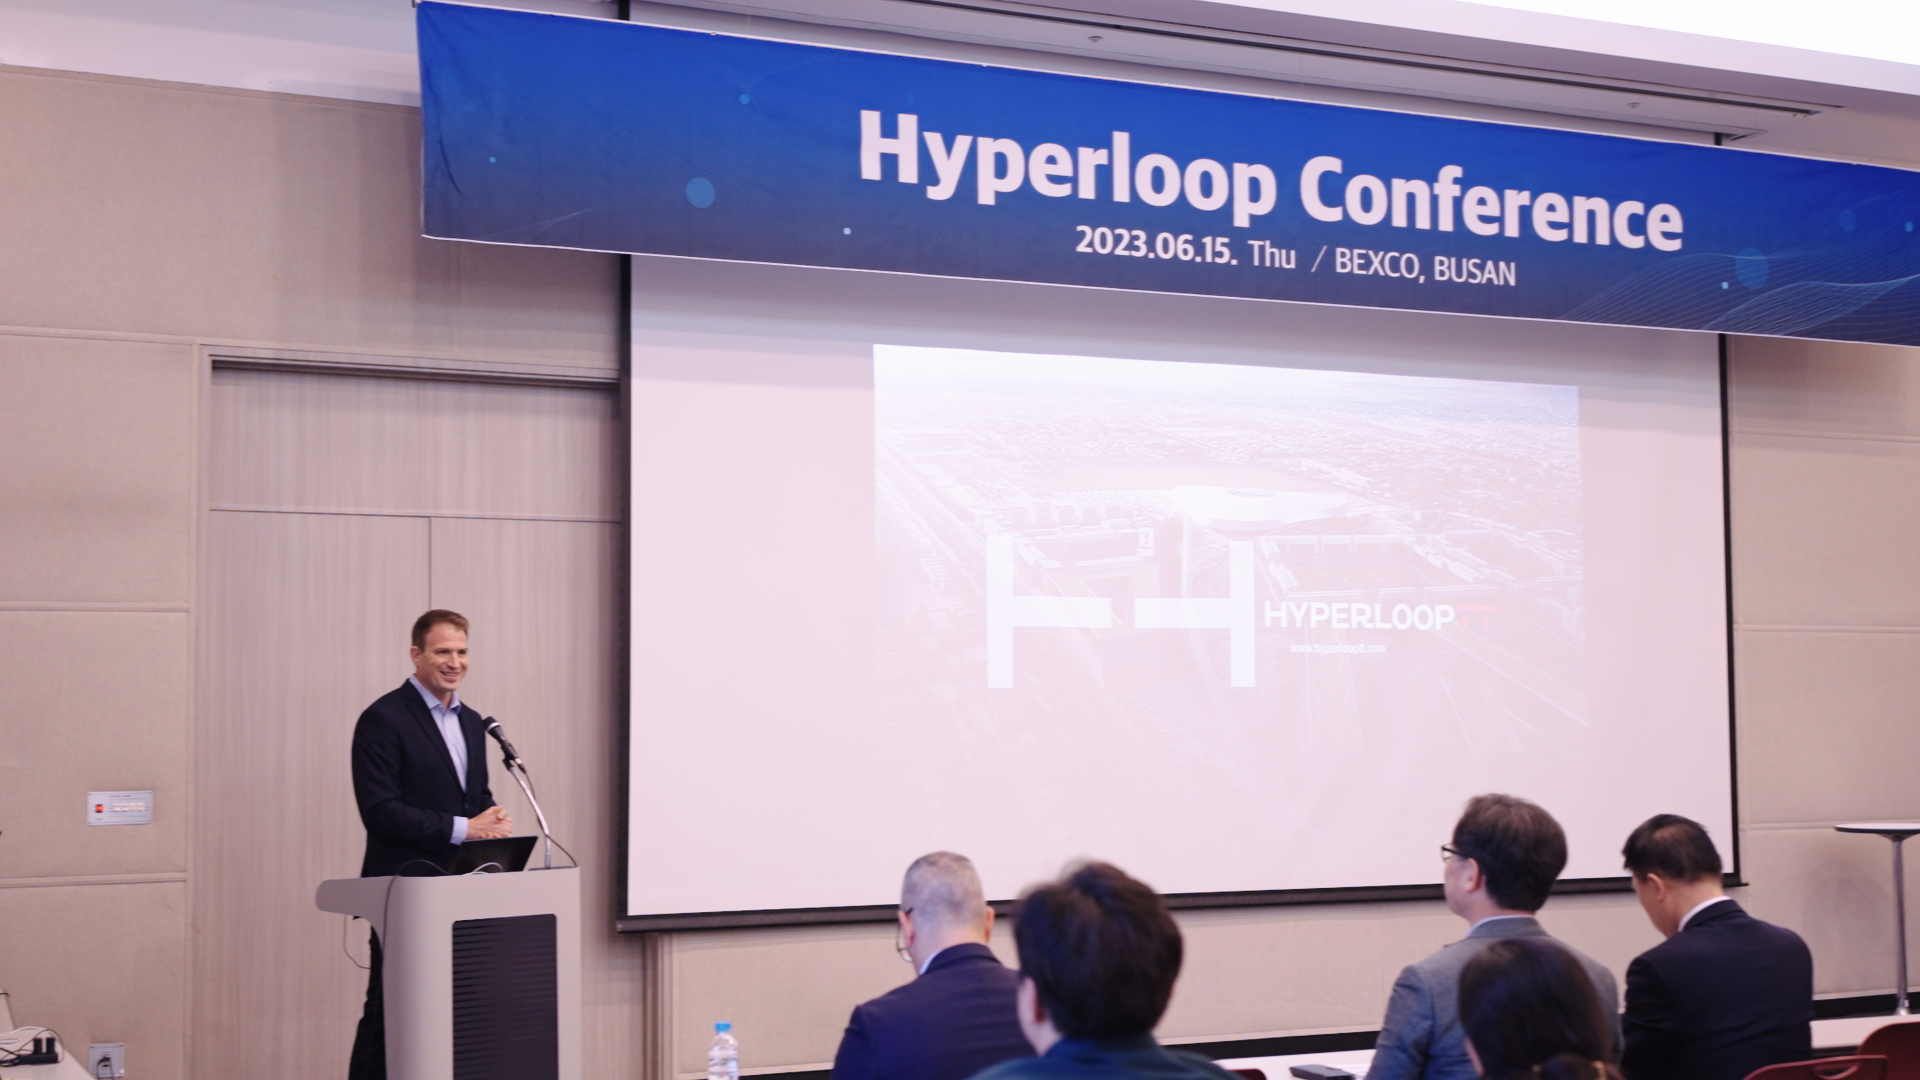 Hyperloop Conference Korea 2023